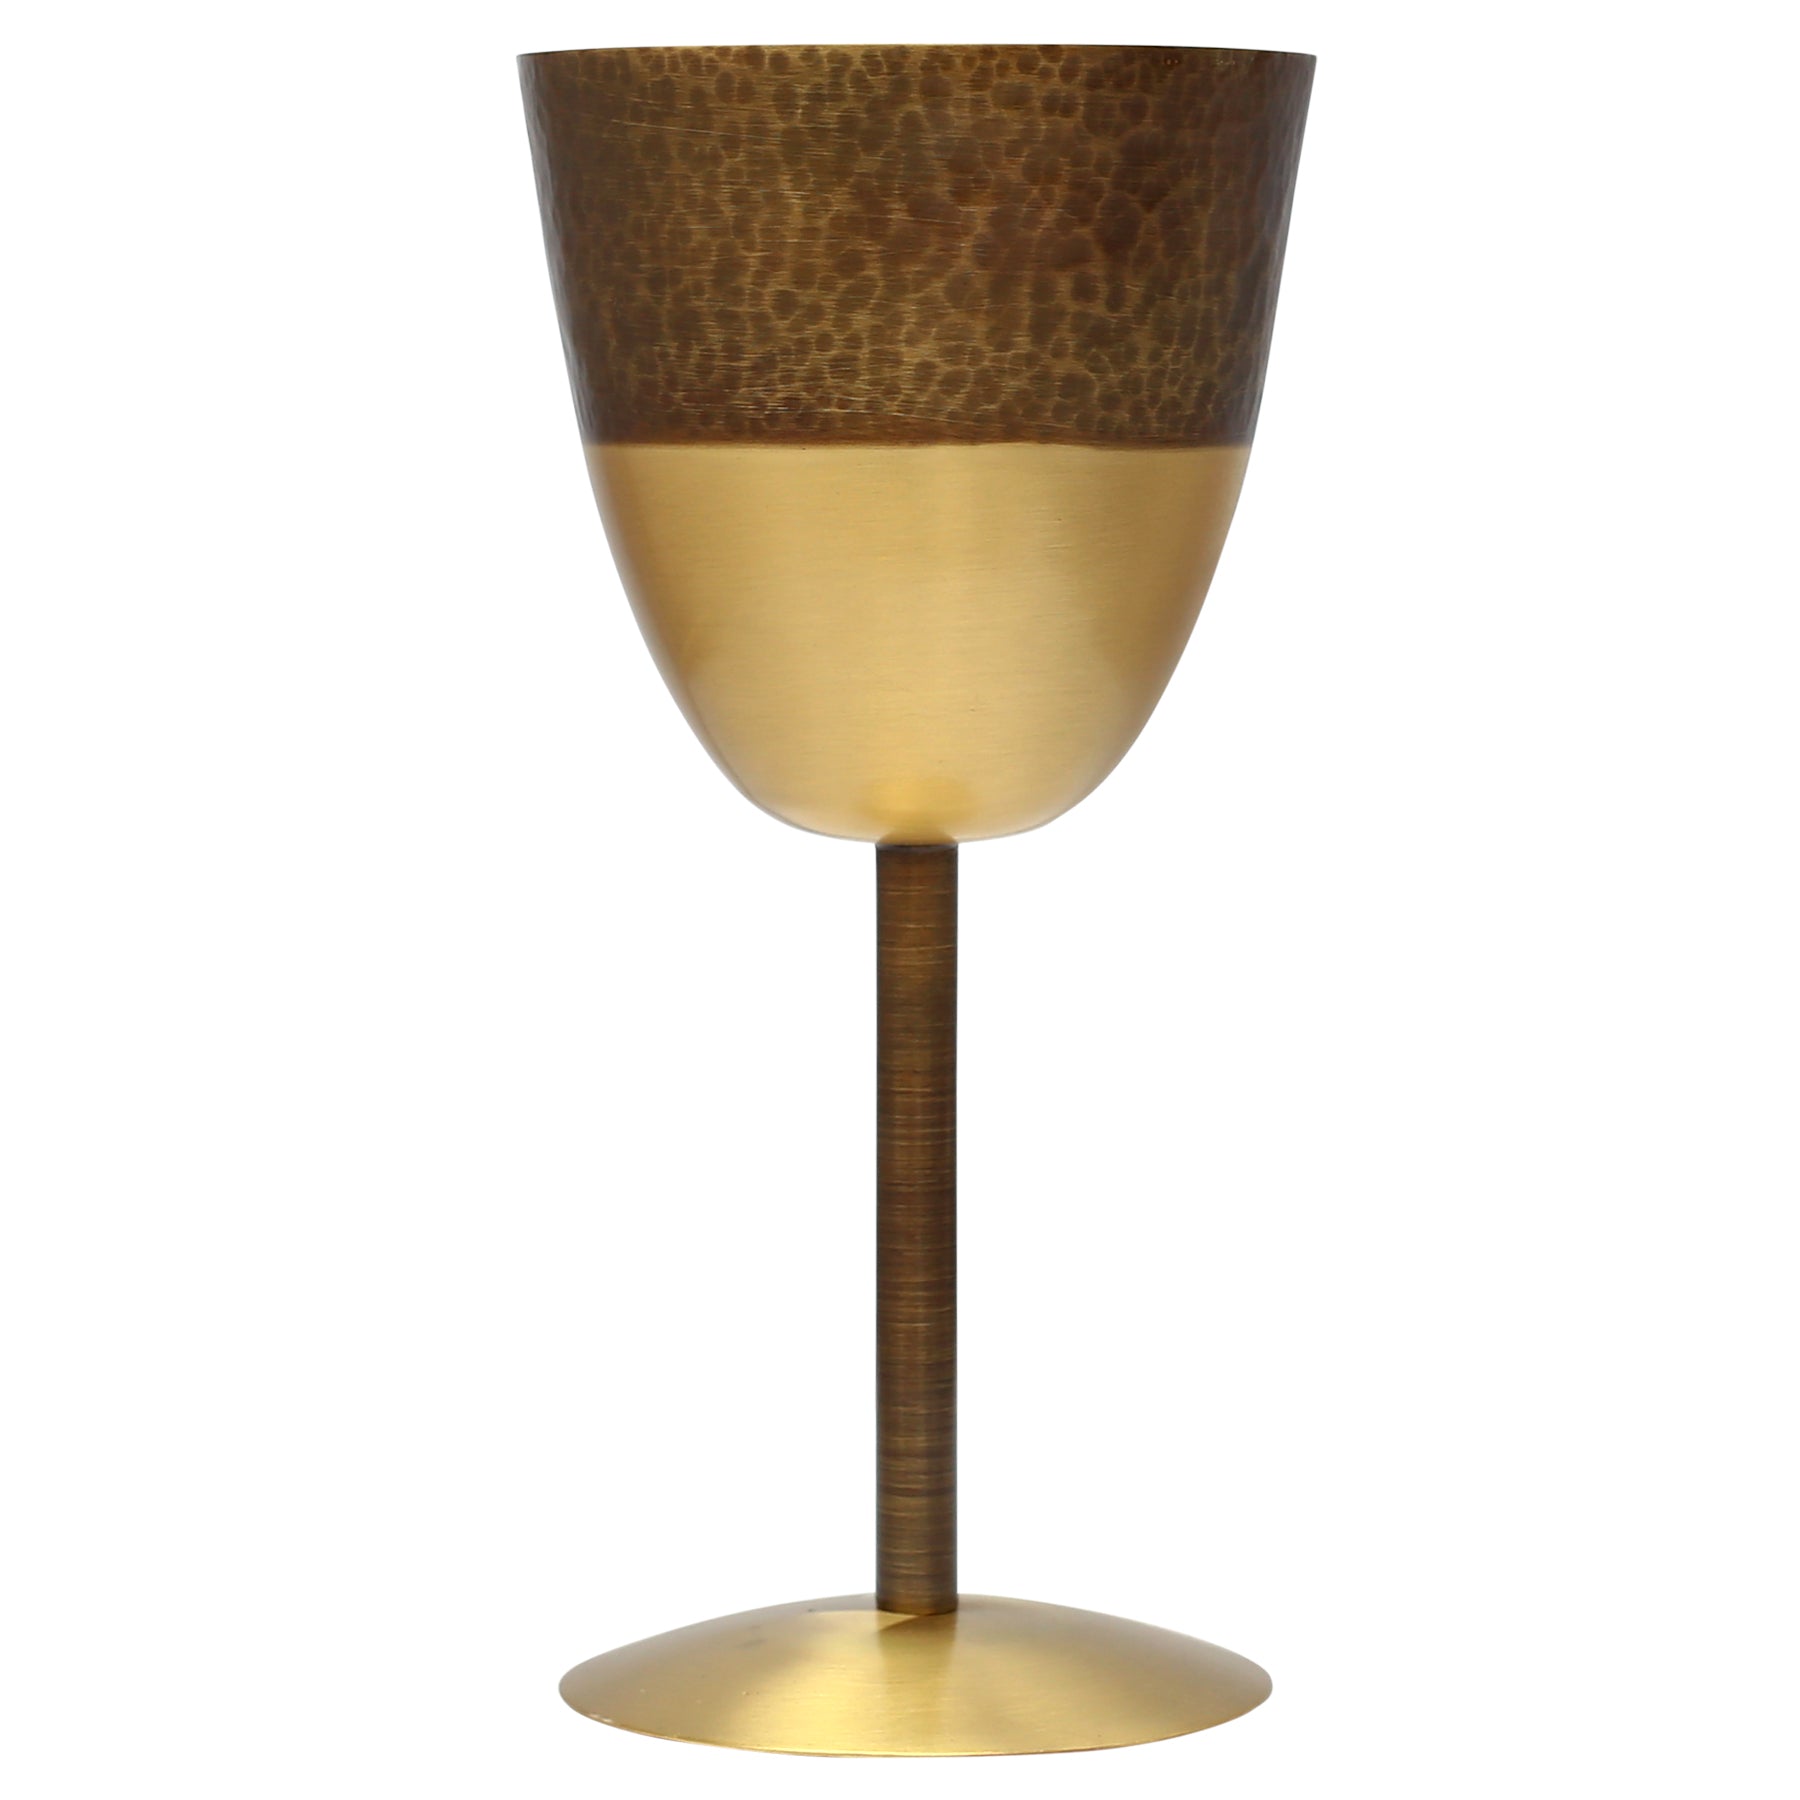 Brass Wine Hammered Goblet at Best Price – Ragaarts